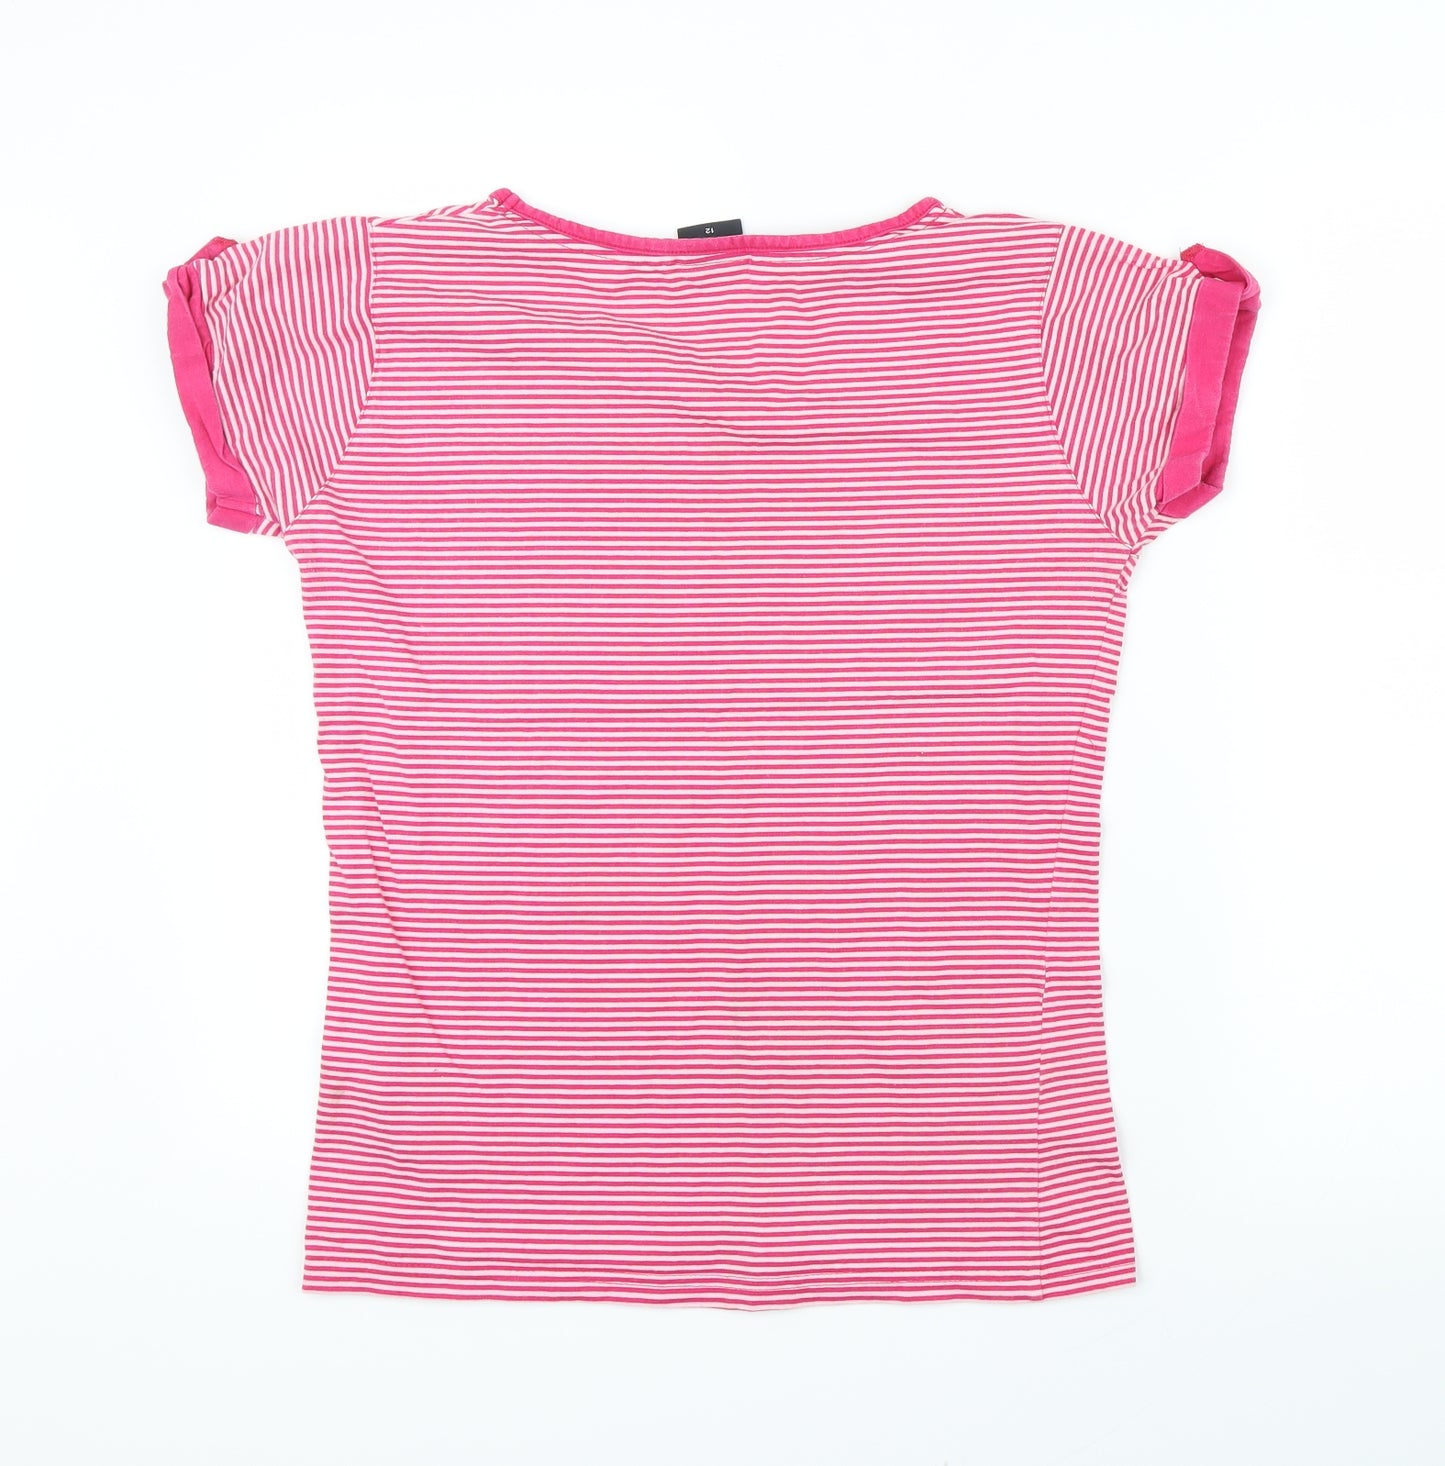 Toggi Womens Pink Striped  Basic T-Shirt Size 12